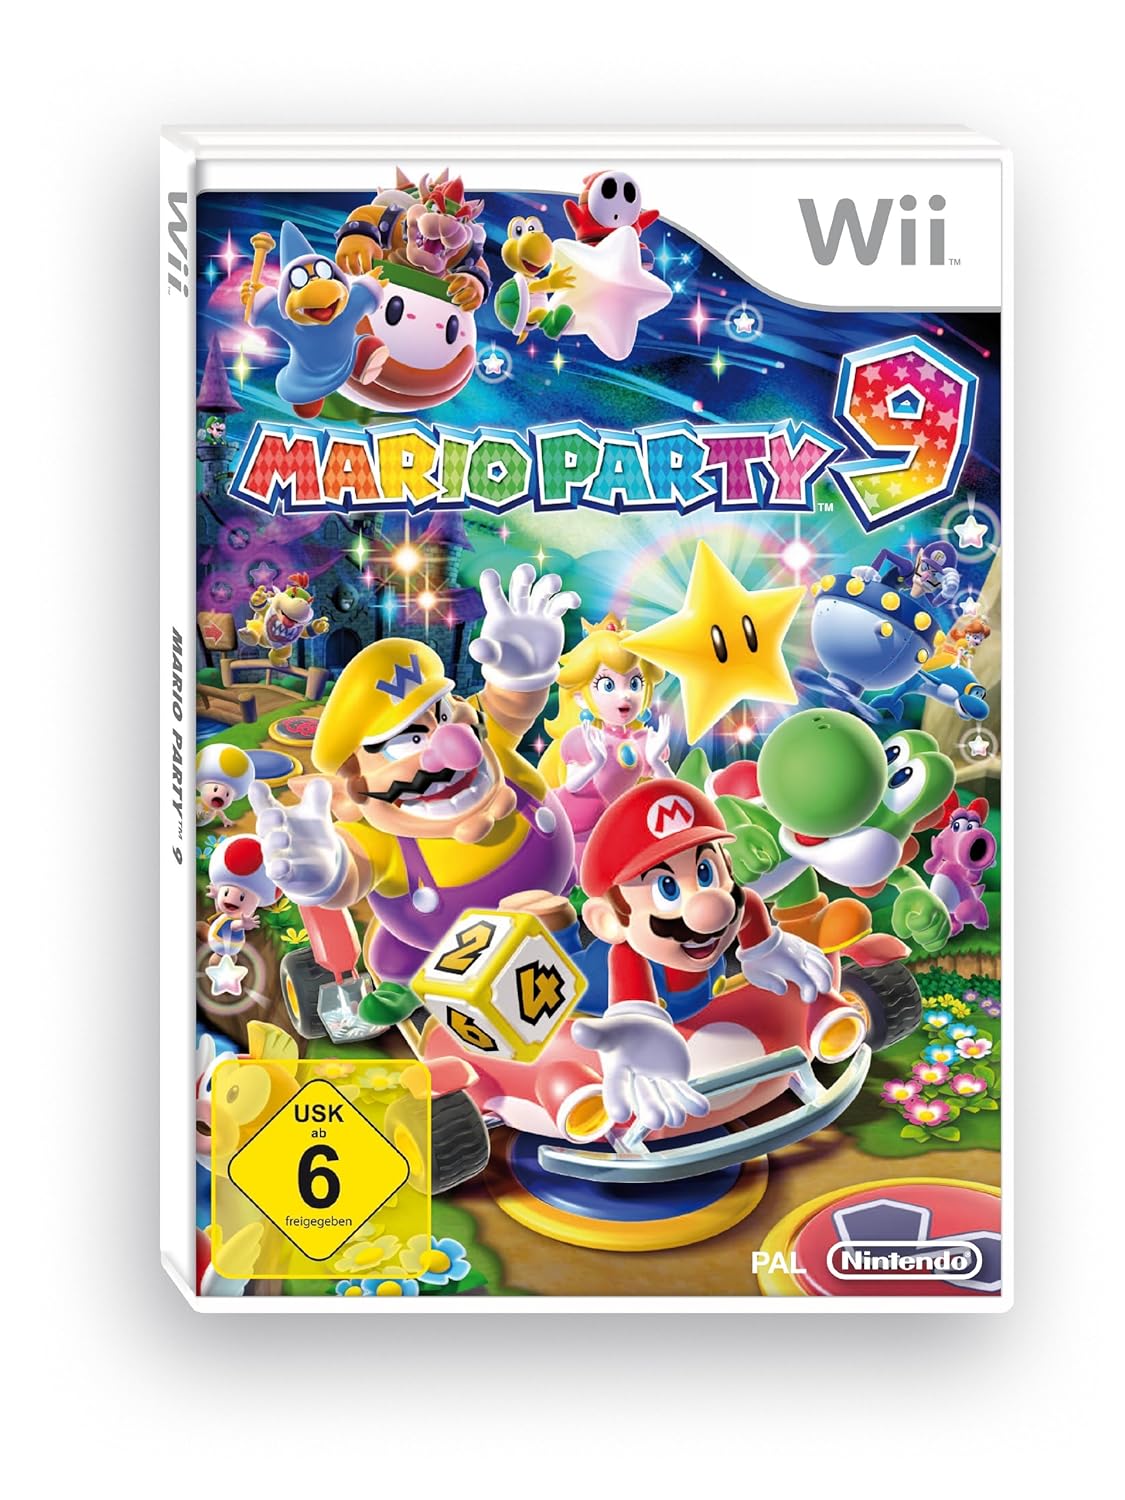 Mario Party 9 - [Nintendo Wii]